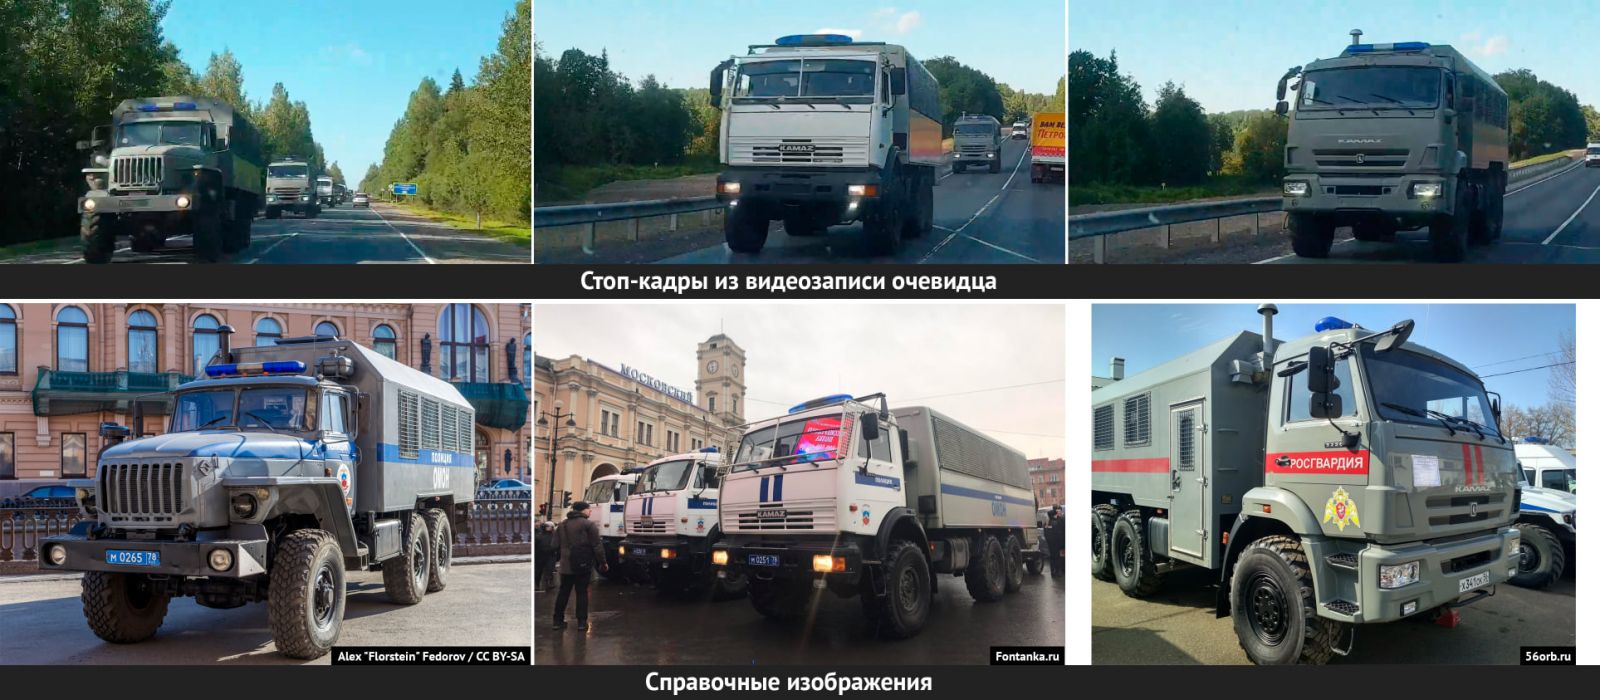 Колонна российских автозаков движется в сторону Беларуси. Фото: Conflict Intelligence Team в Facebook